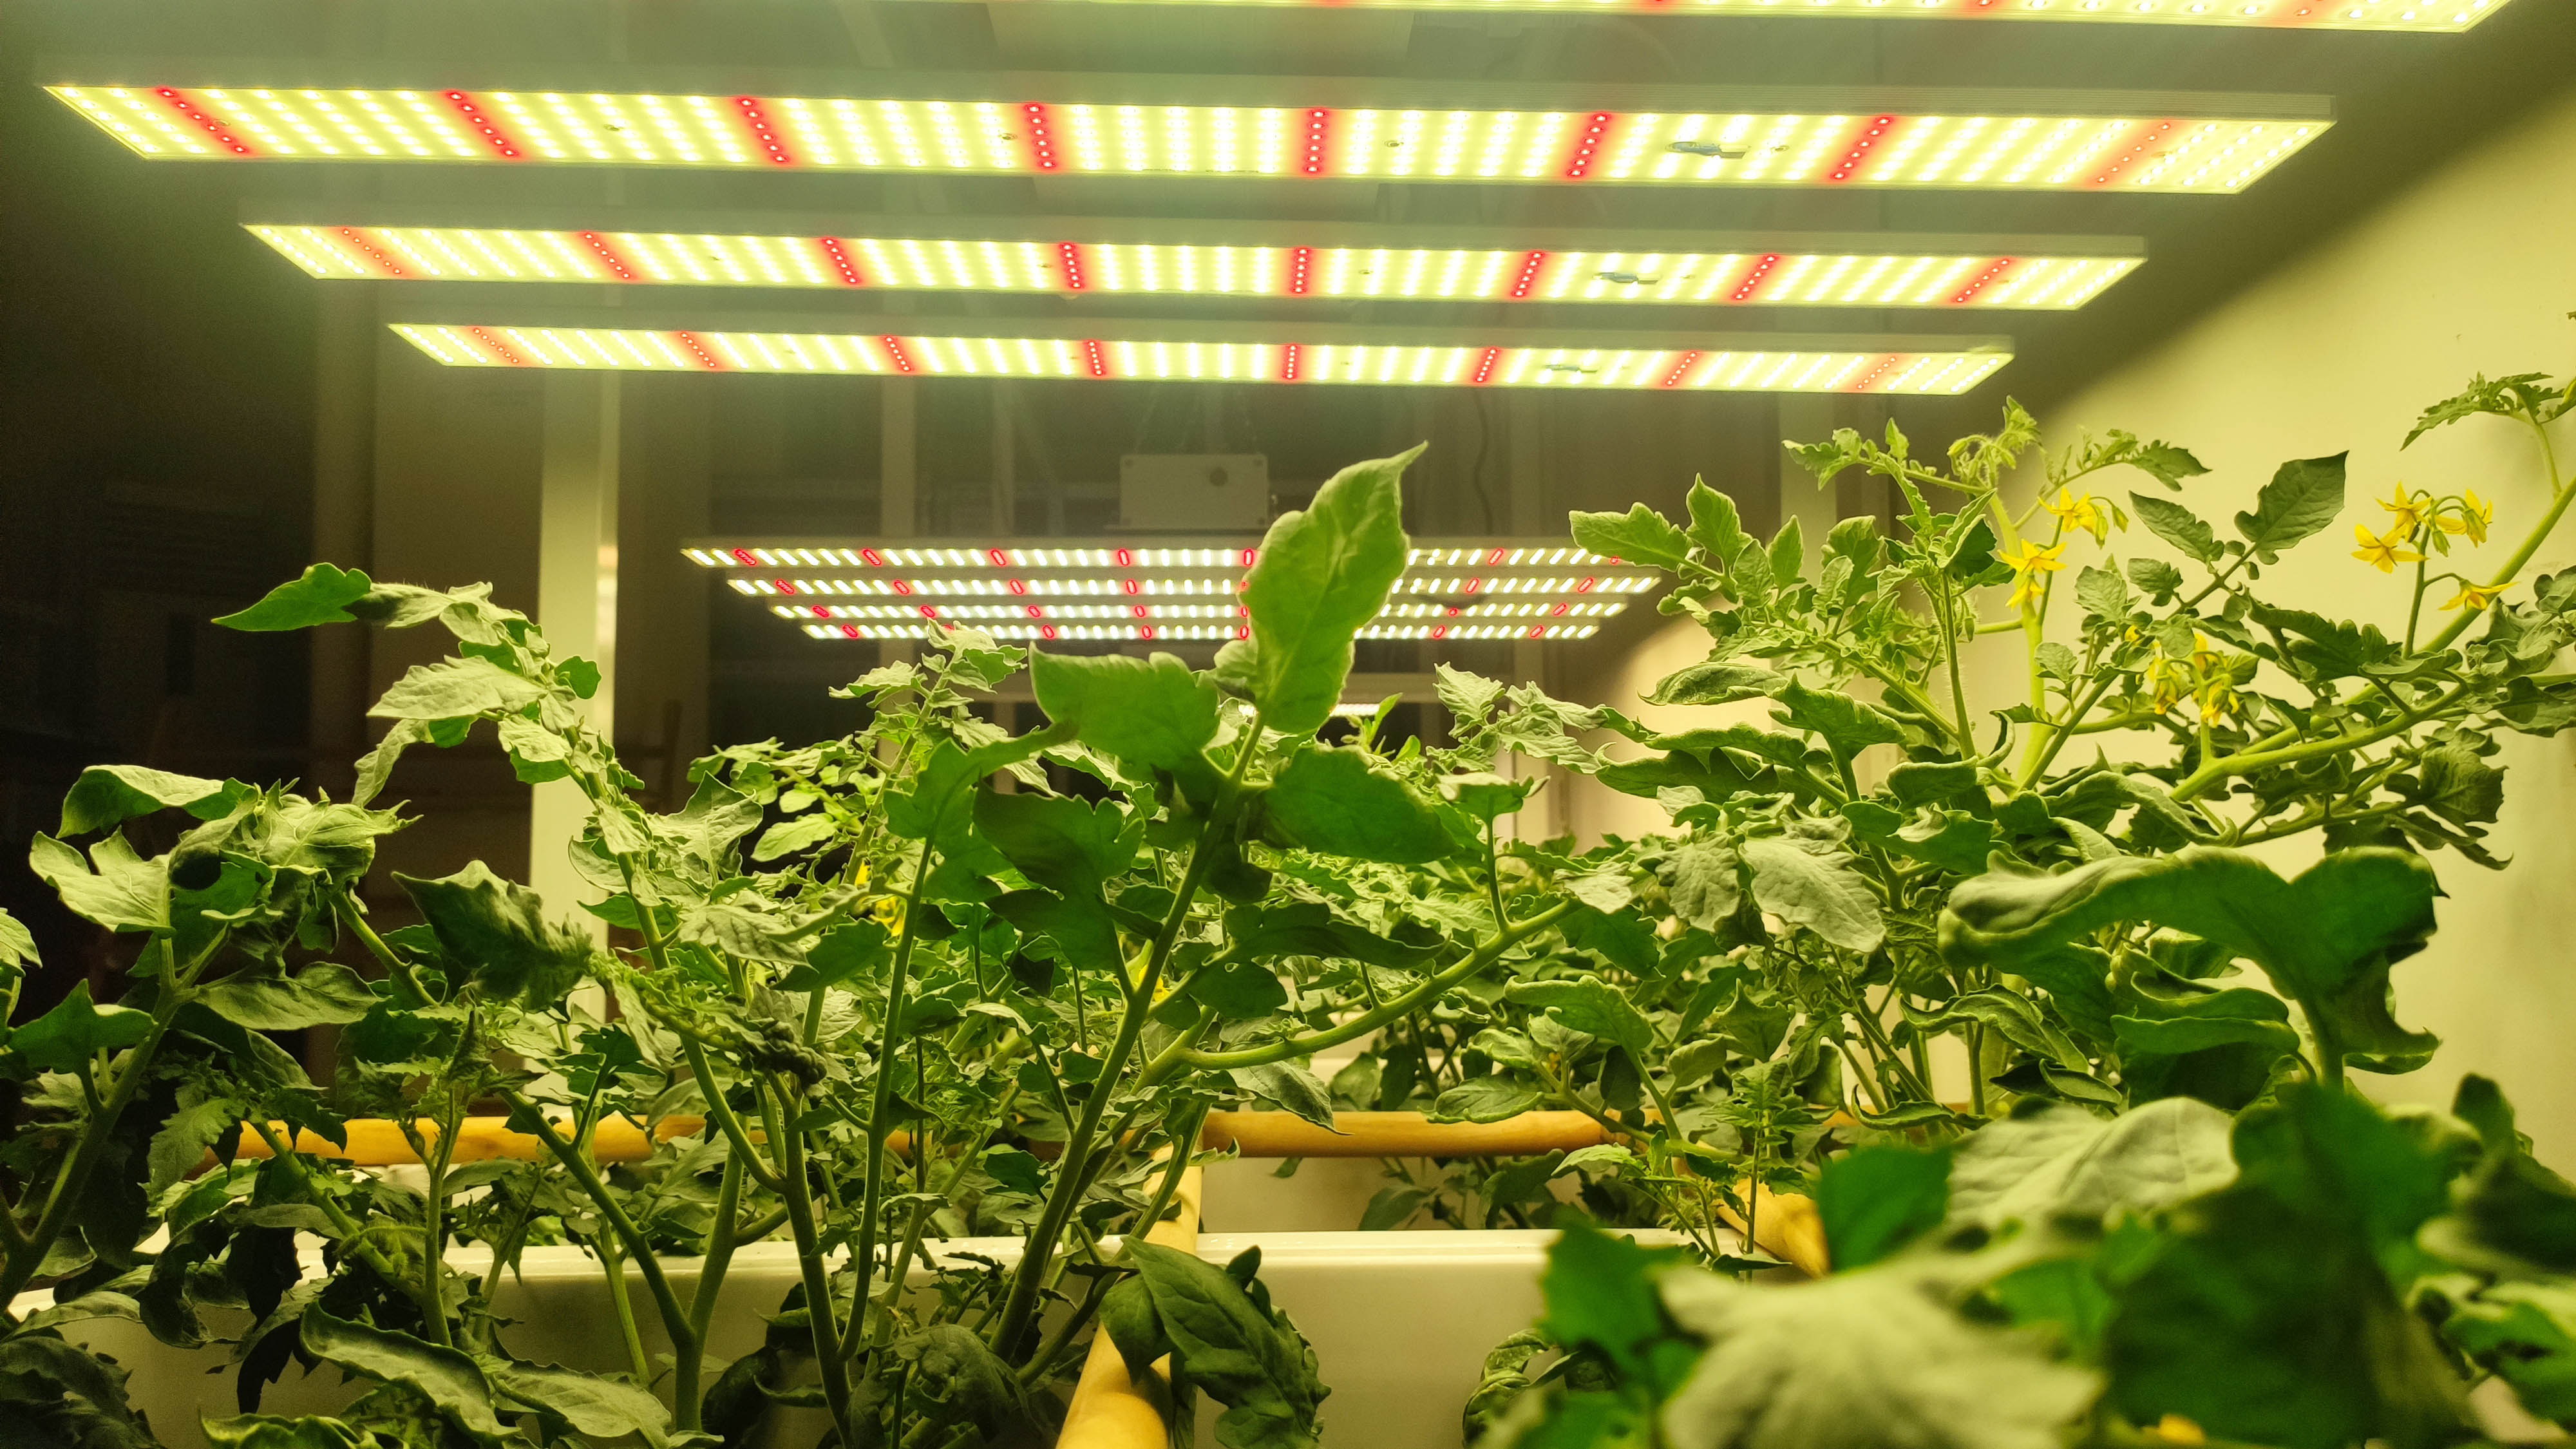 led植物照明未来的应用趋势